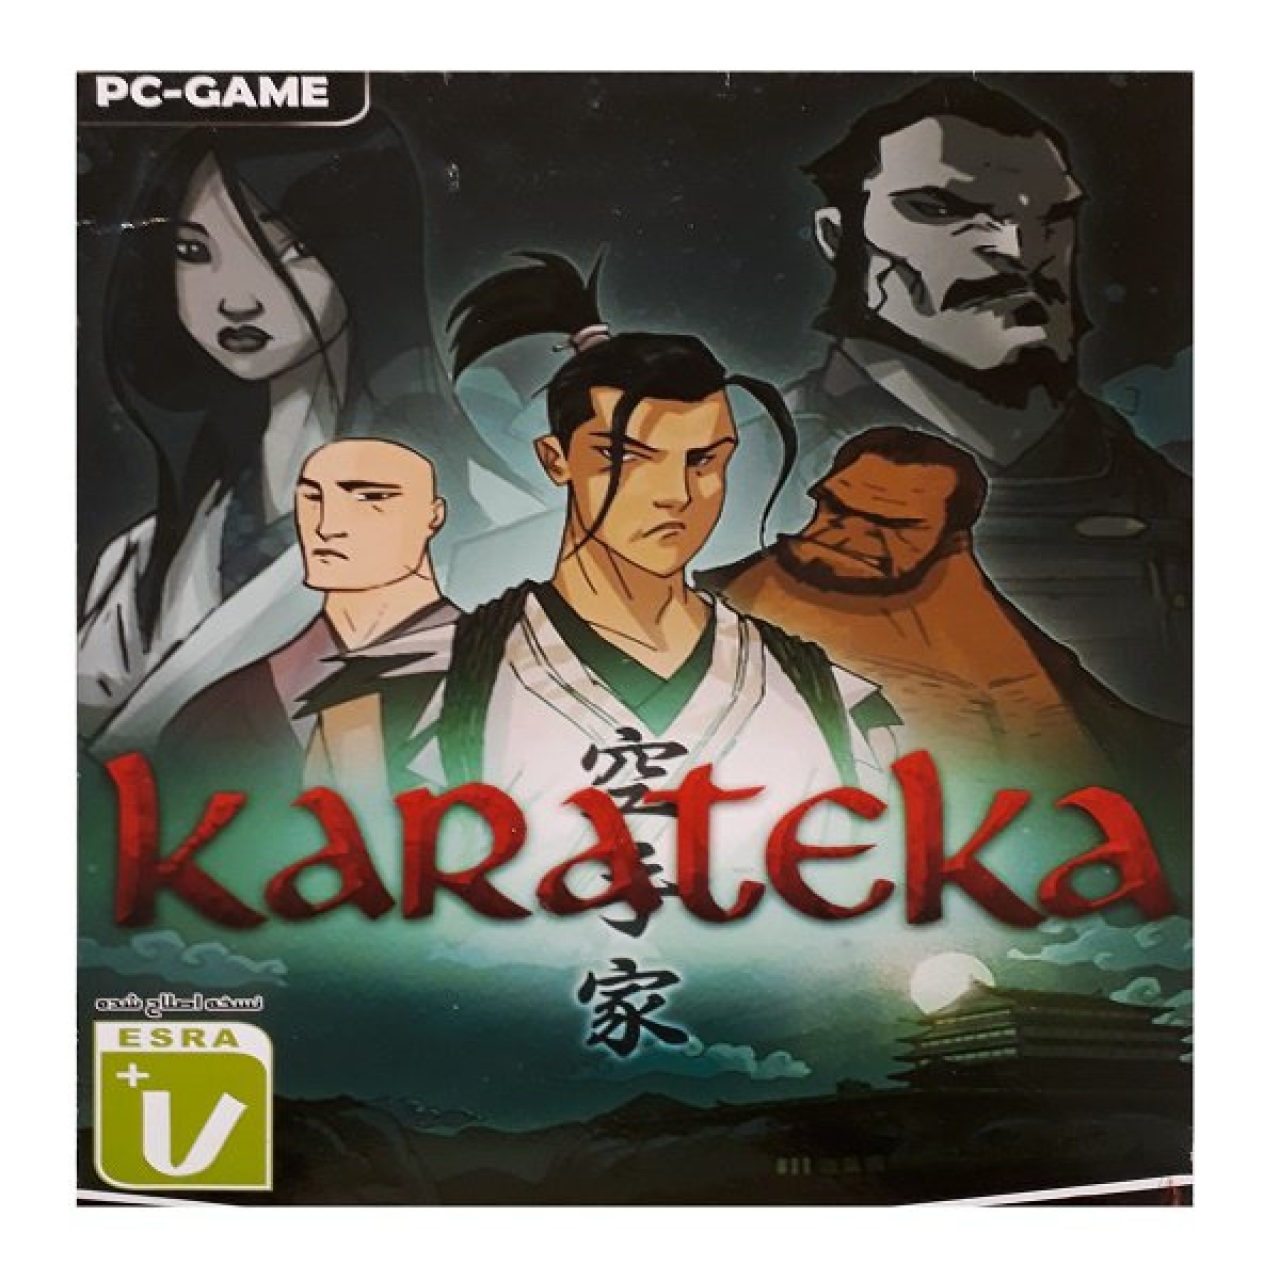 بازی karateka مخصوص pc